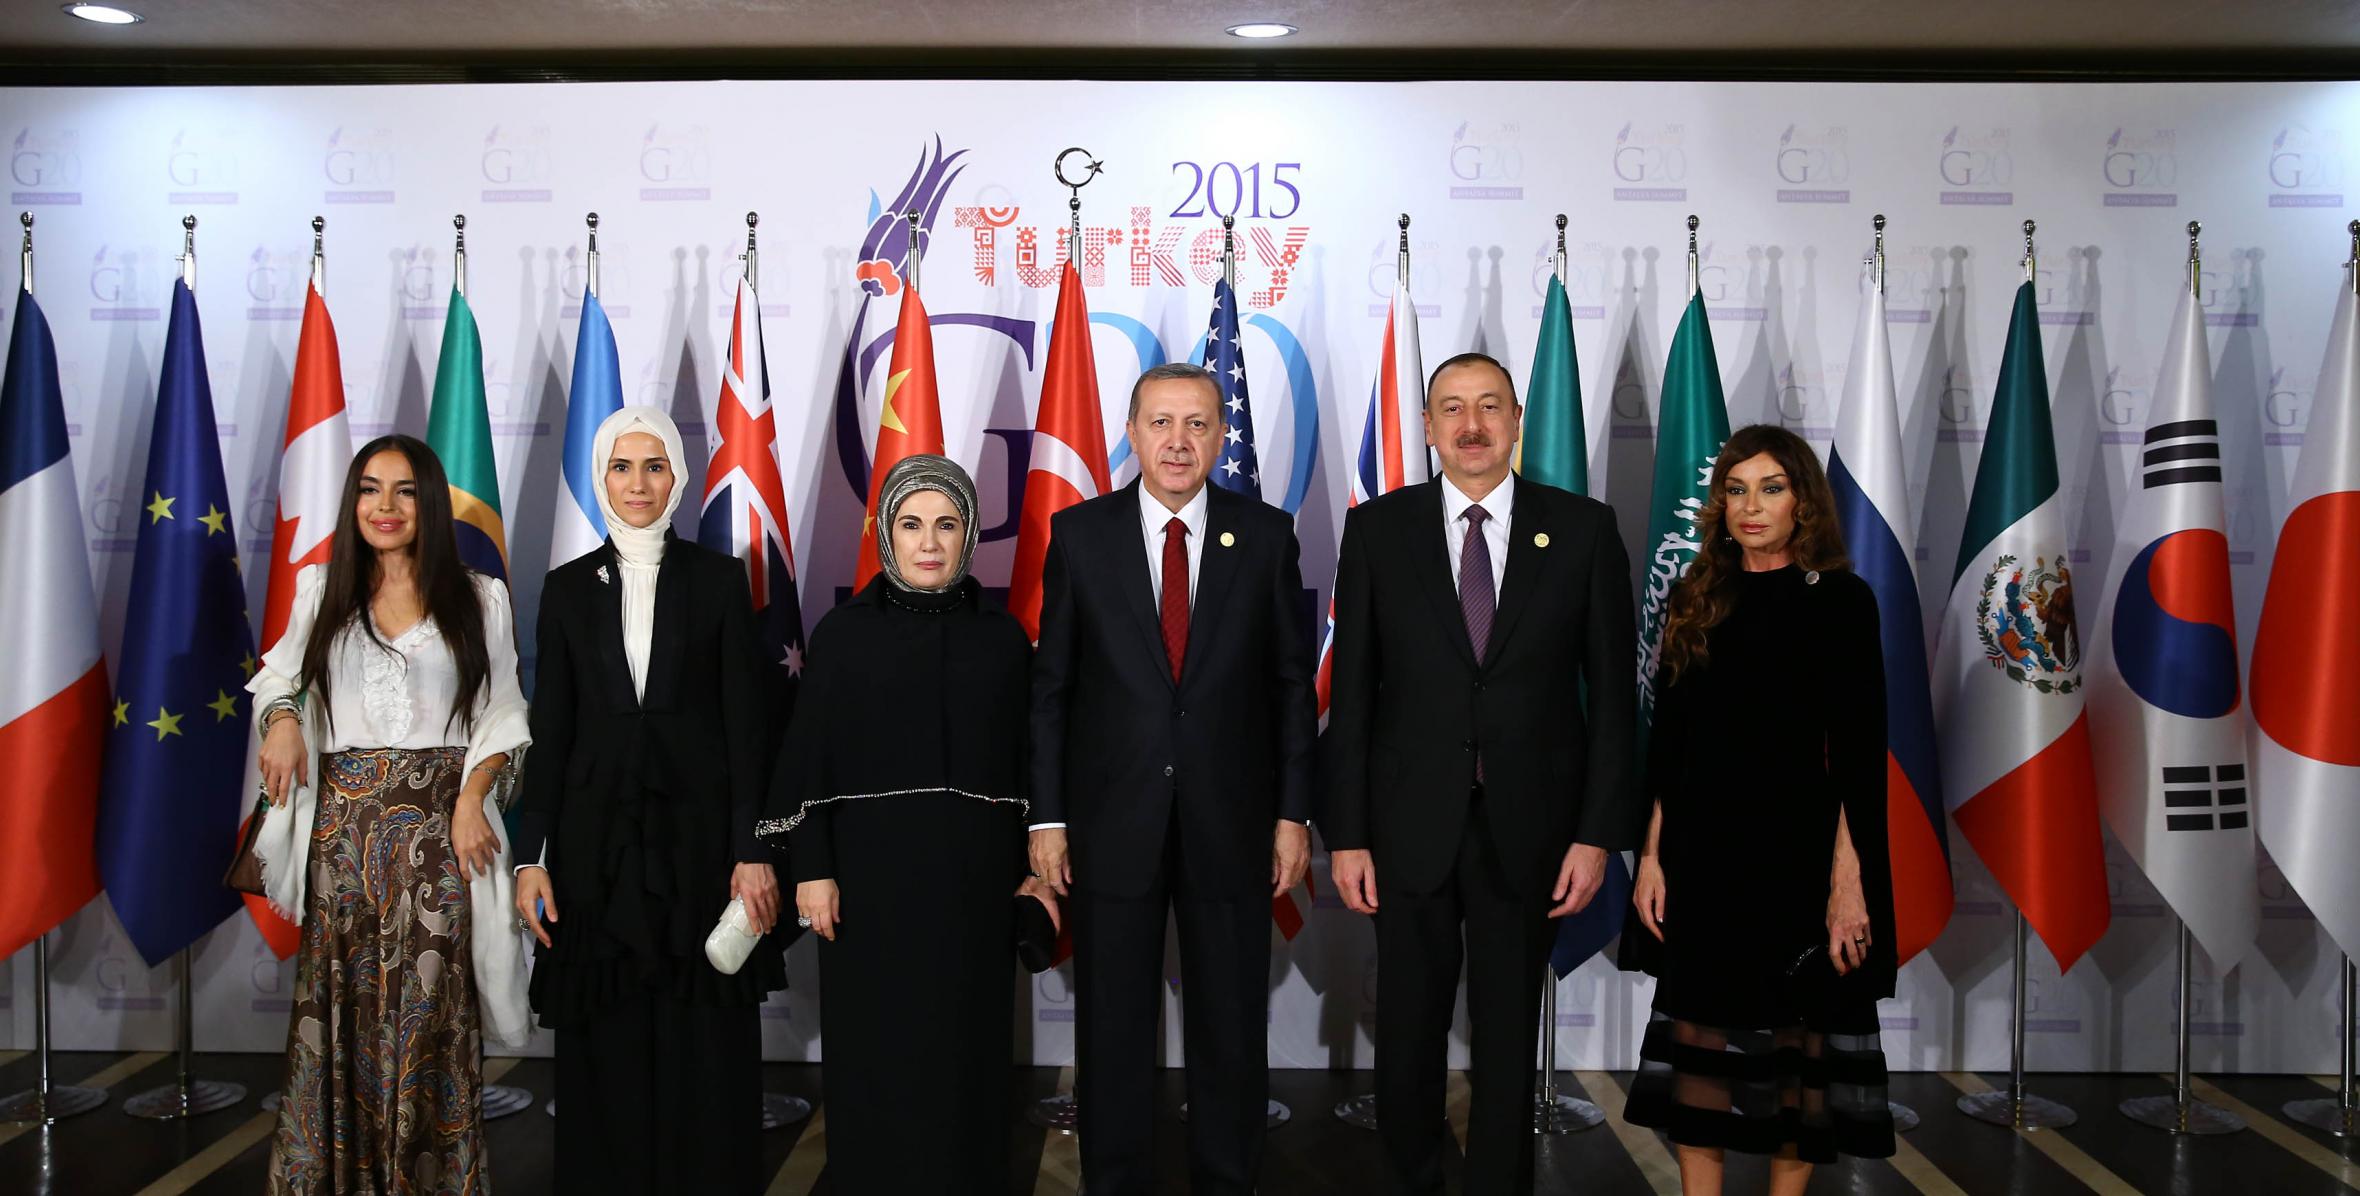 От имени Президента Турецкой Республики Реджепа Тайипа Эрдогана был дан обед в честь глав государств и правительств, руководителей международных организаций